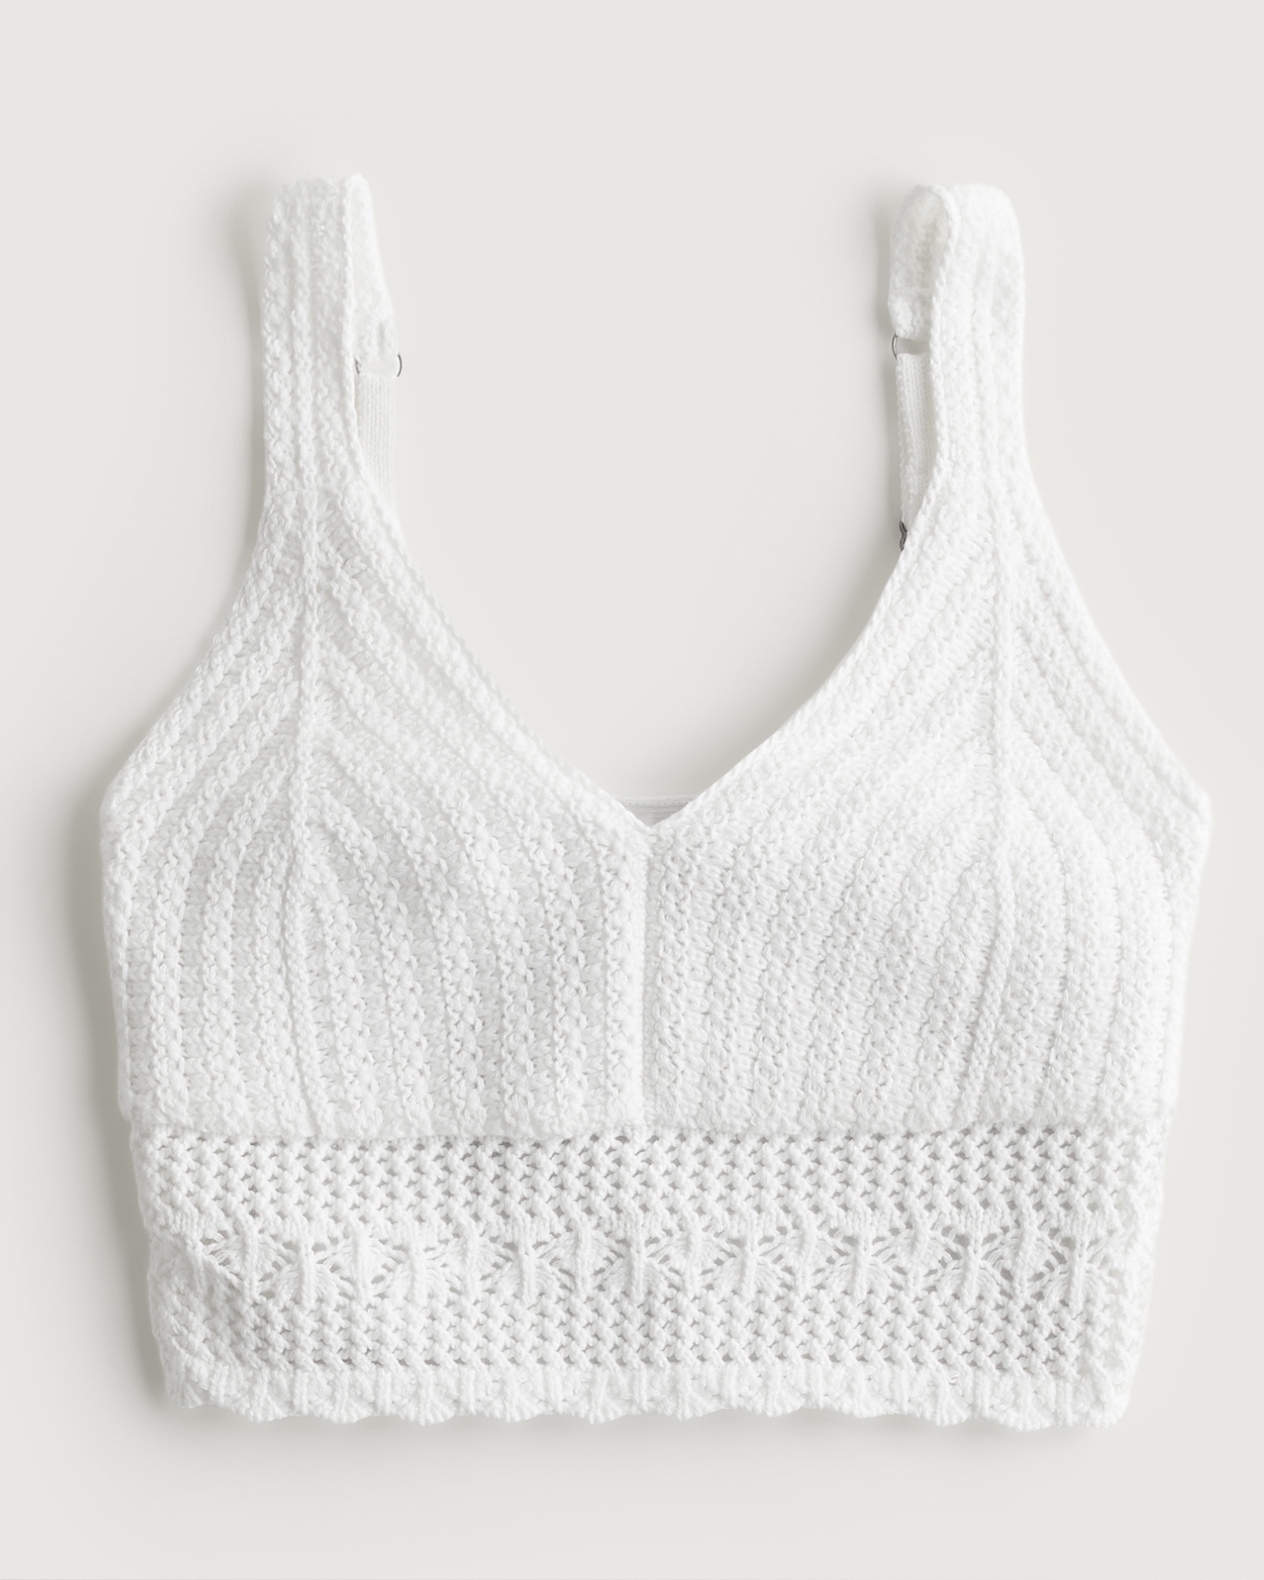 The cold shoulder bralette: Crochet pattern